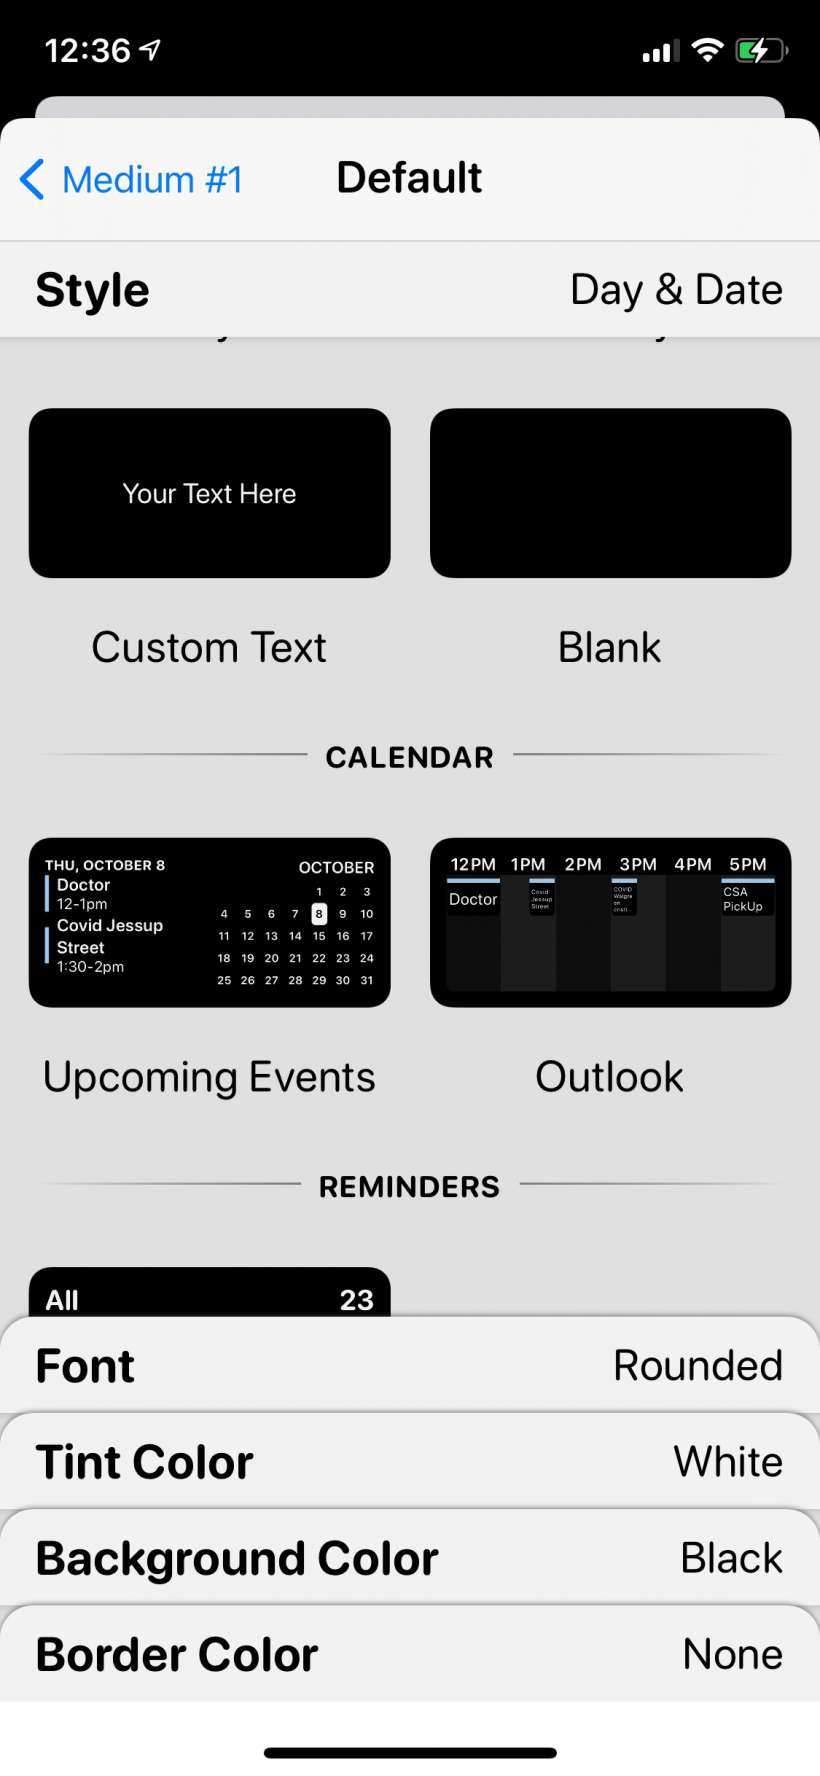 Como personalizar y personalizar los widgets para iPhone y iPad con Widgetsmith.